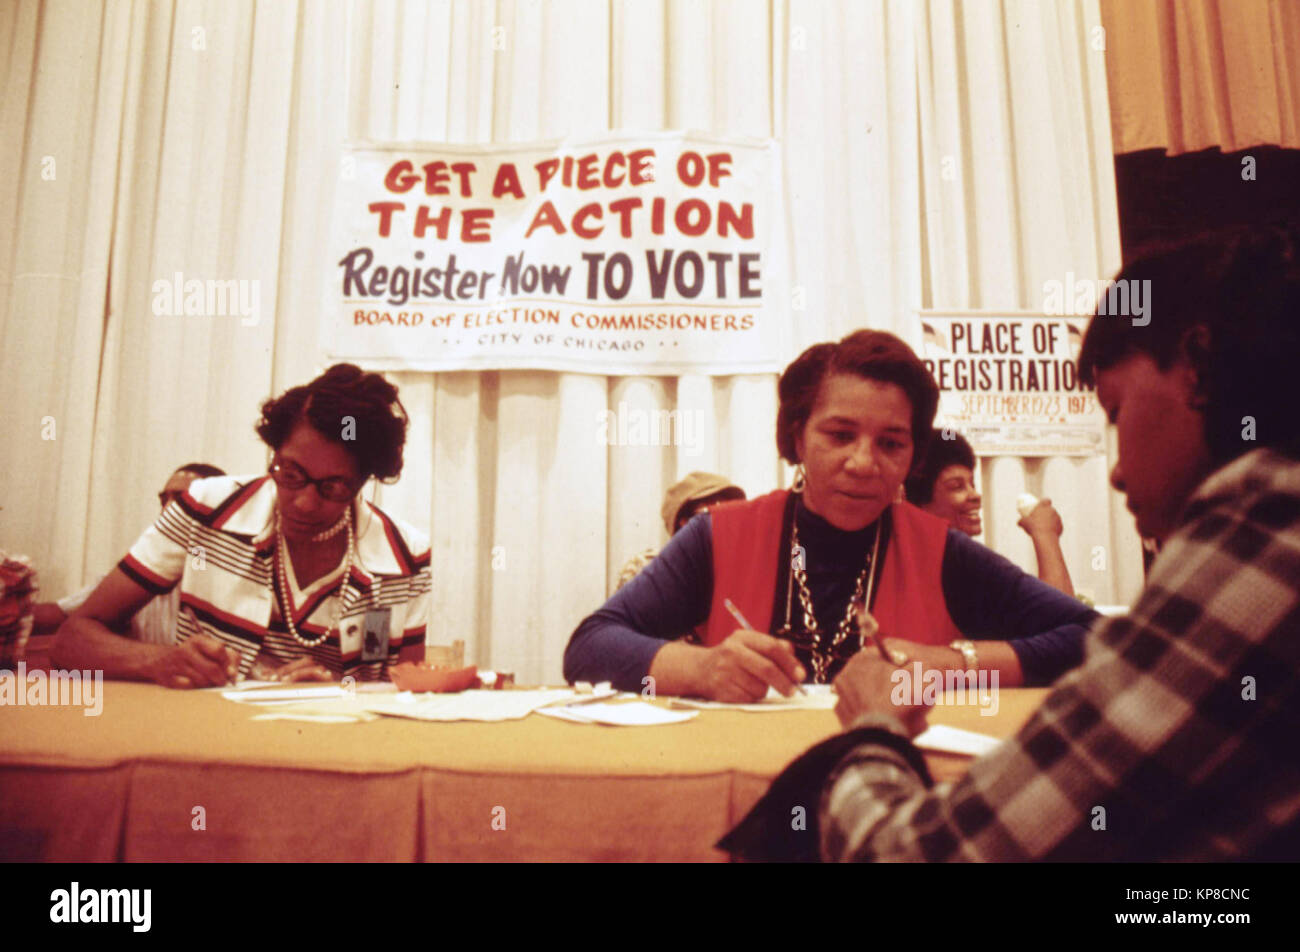 Abstimmung Ausrichtung Antrieb war ein Aspekt der schwarzen Expo, eine jährliche Ausstellung von Schwarzen Talent, Bildung, Produkte und andere Aspekte der Black Consciousness in Chicago. Für seinen schattigen poltiics bekannt, Chicago Demokraten registrieren Sie eine ausreichende Menge an schwarzen Wählern während einer Wählerregistrierung fahren Sie in den frühen 1970er Jahren Stockfoto